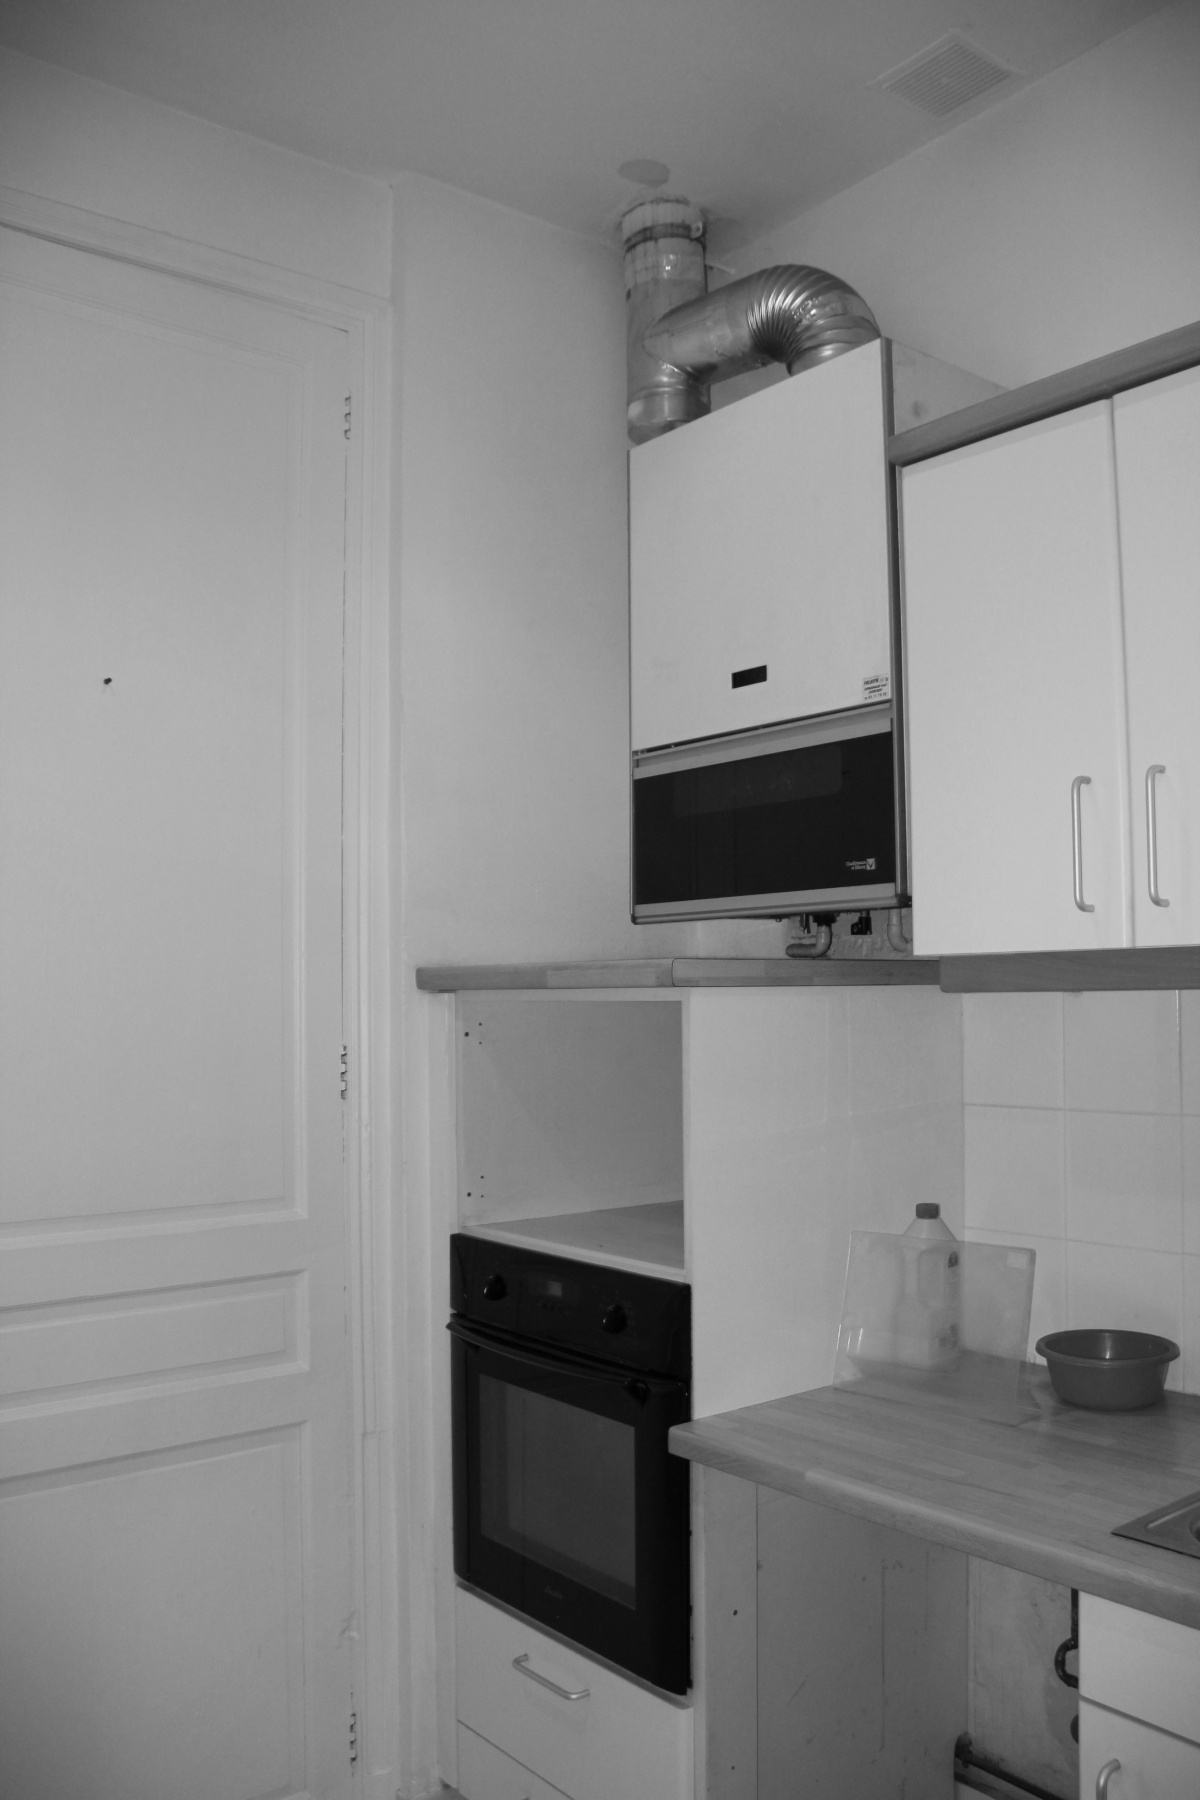 Rnovation d'un appartement 19me et cration d'un duplex : cuisine avant